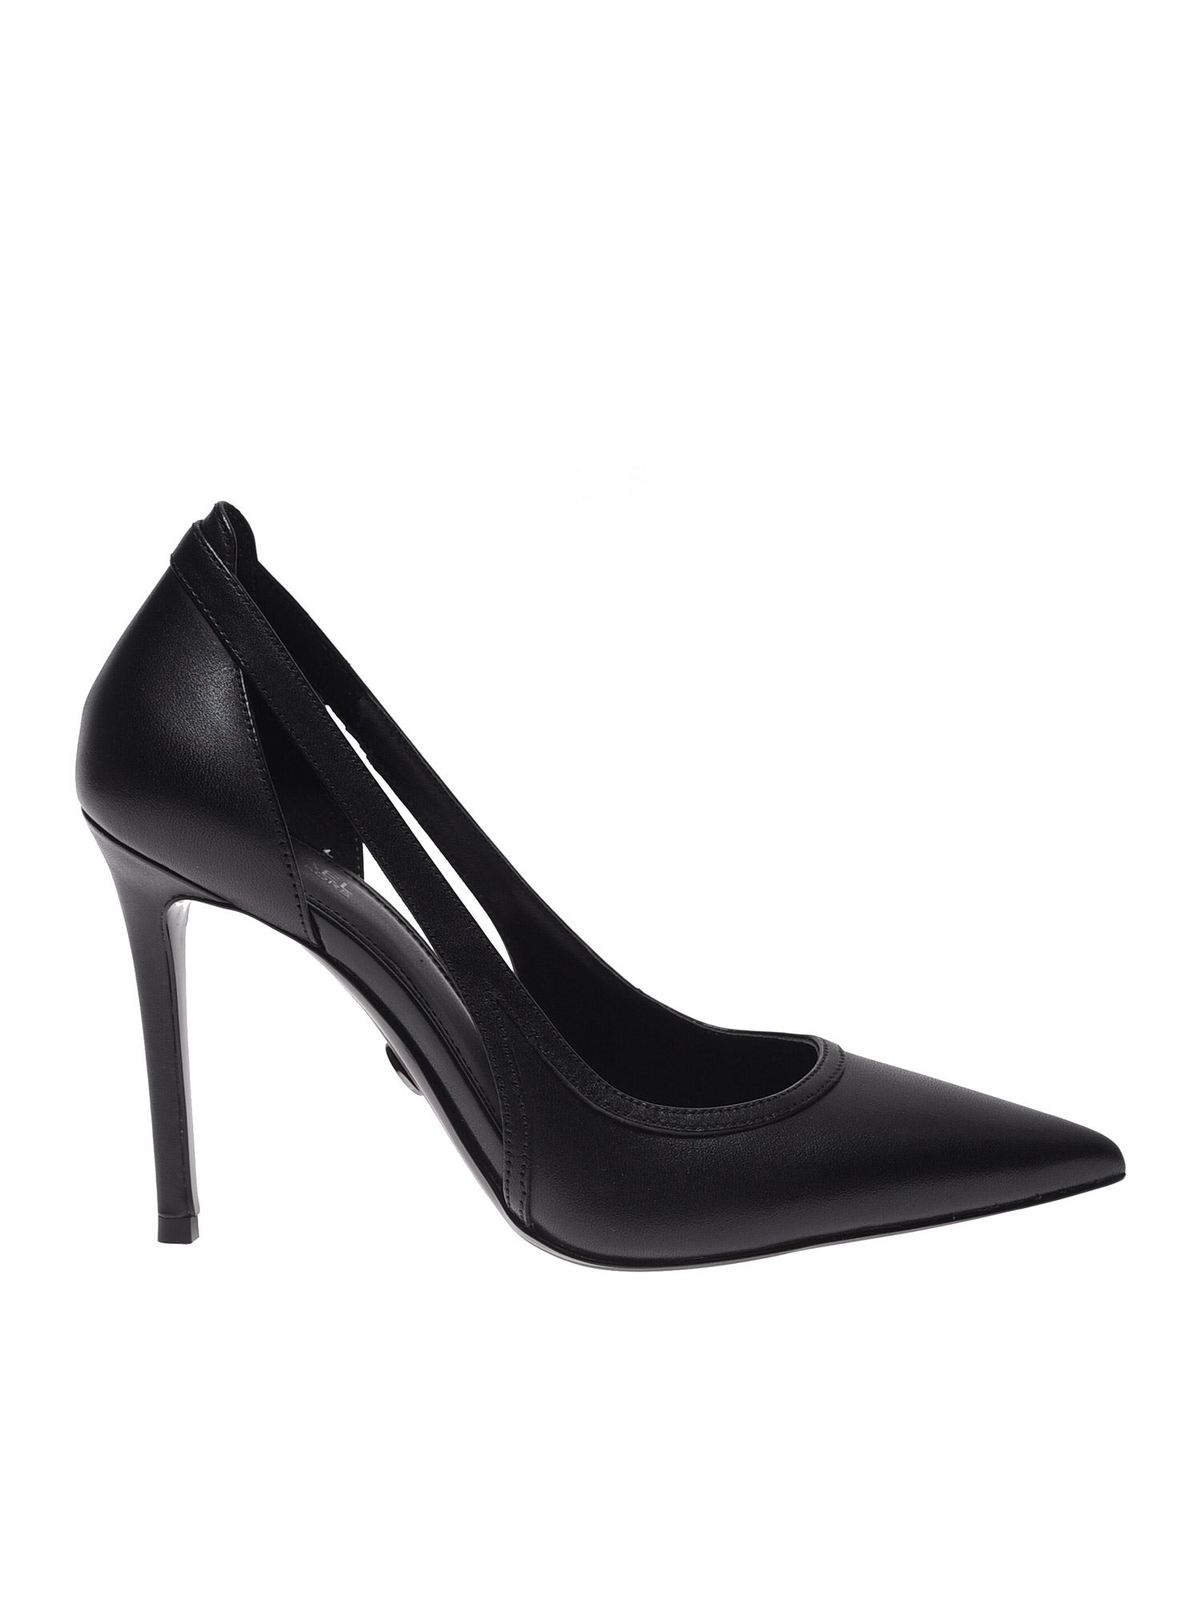 Court shoes Michael Kors - Nora pumps in black - 40T0NOHP1LBLACK